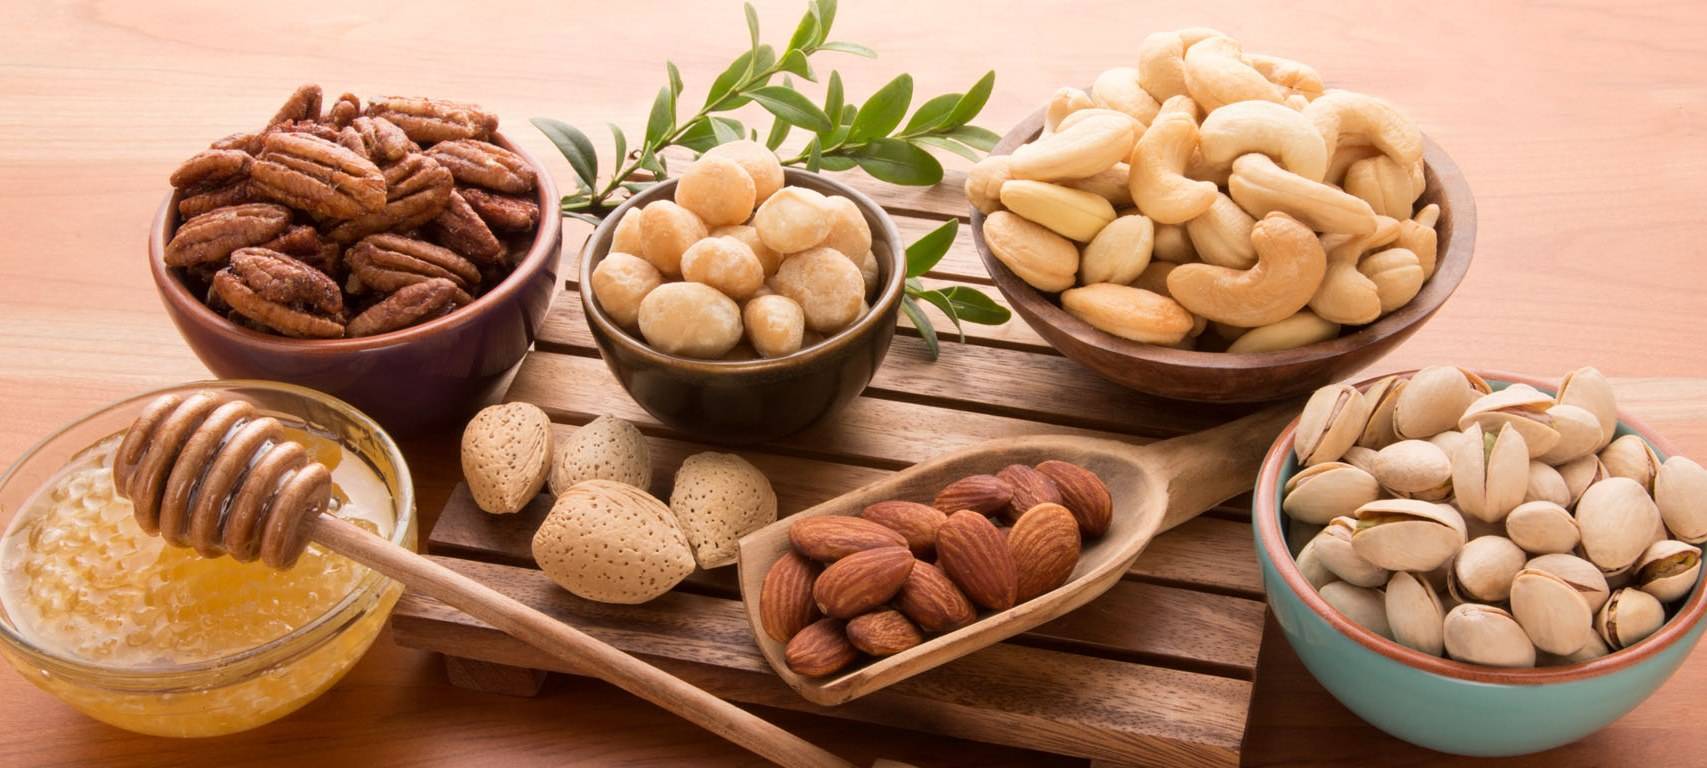 Польза и вред миндаля — 9 доказанных свойств для организма человека, противопоказания и состав ореха